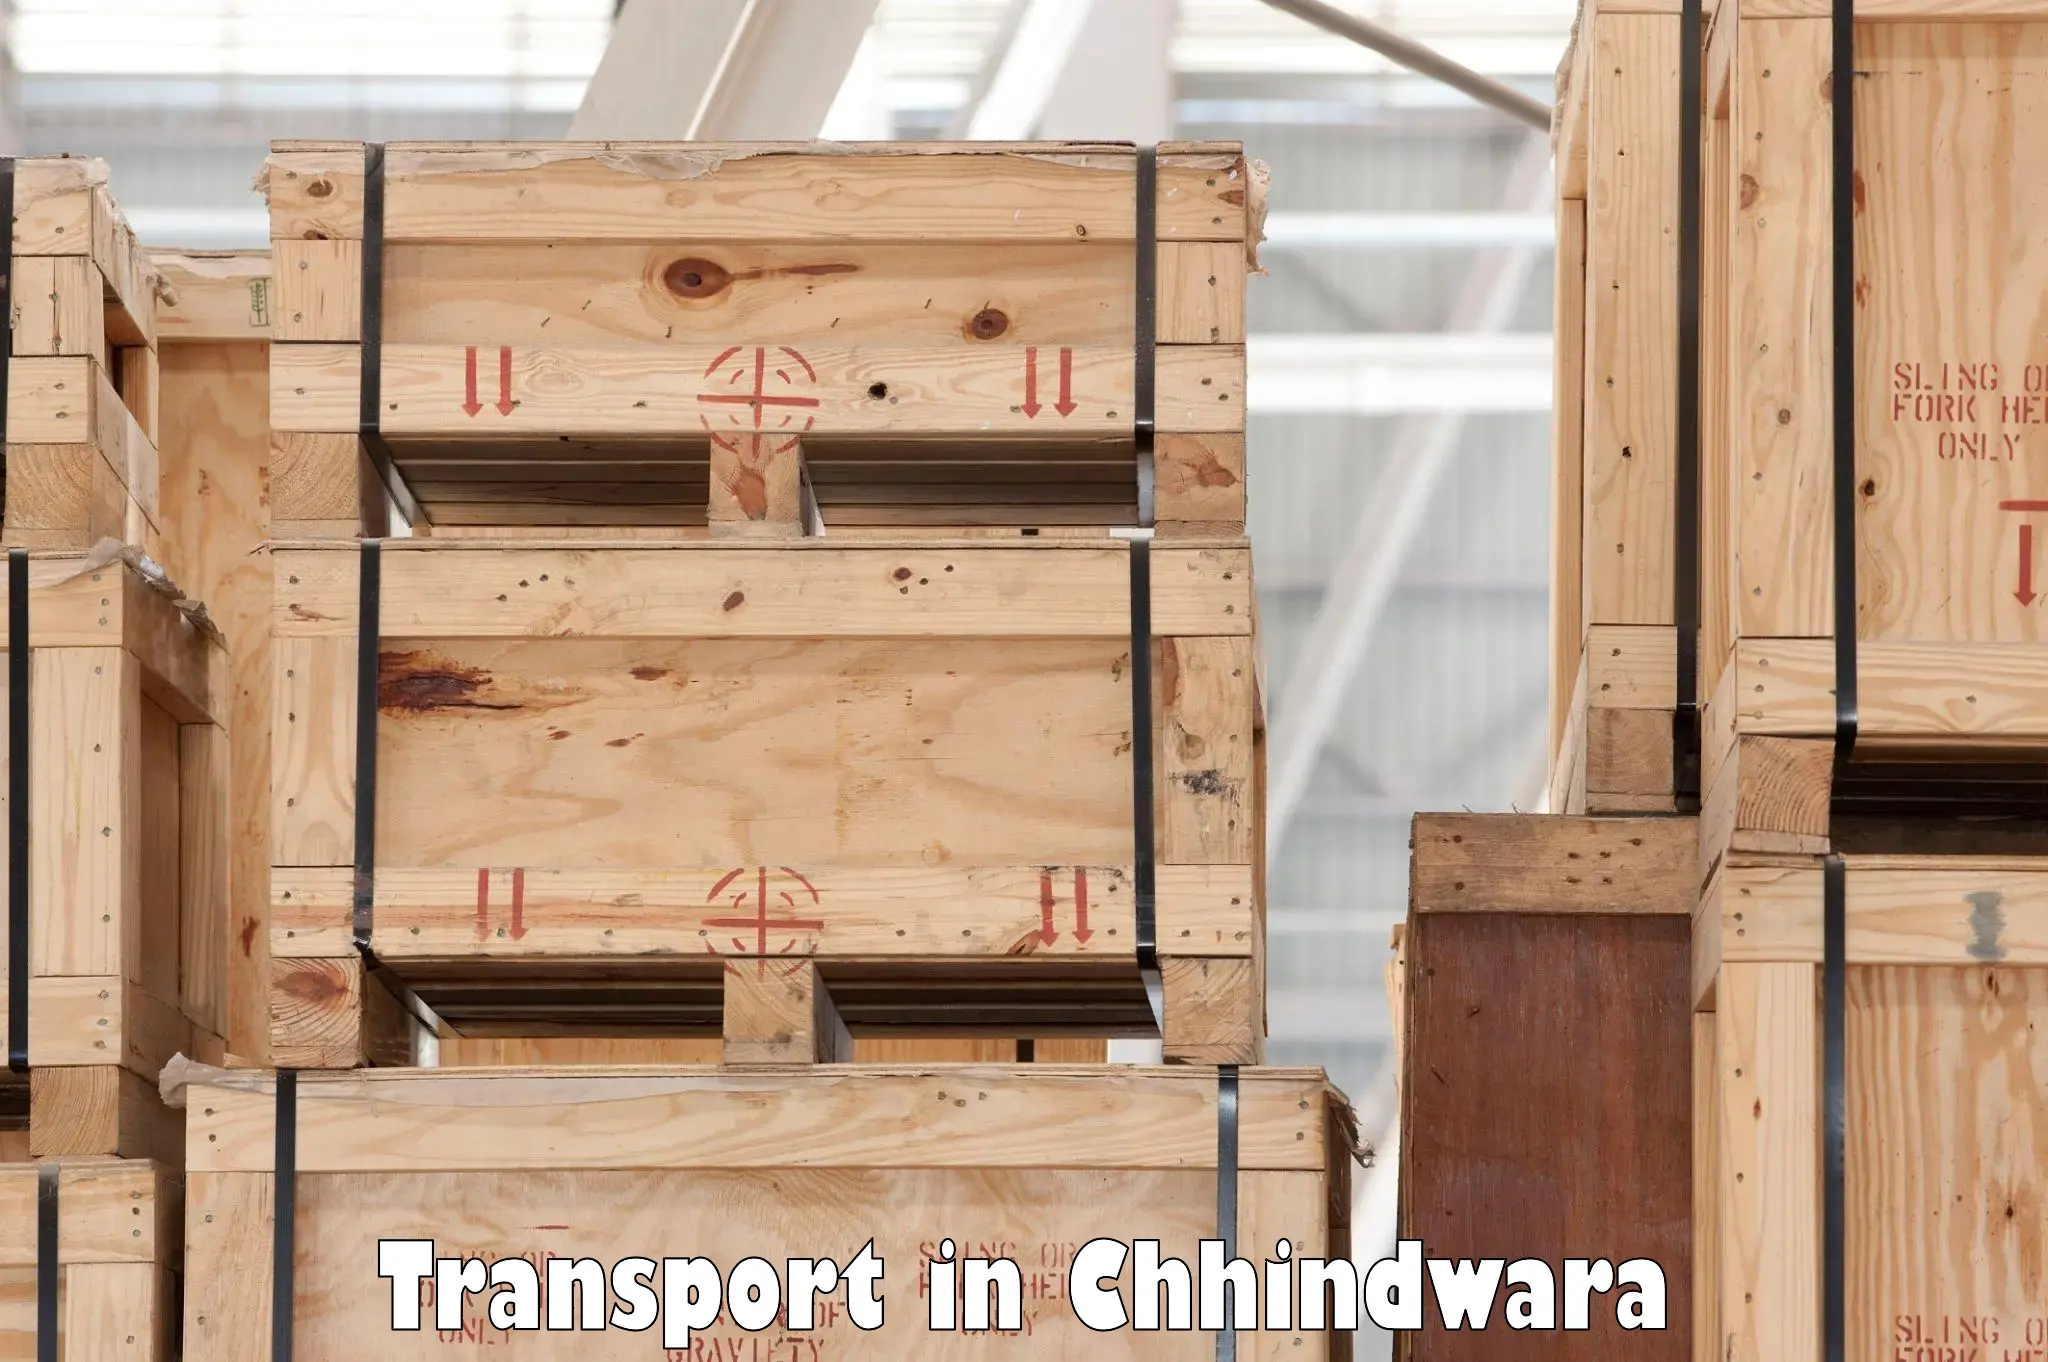 Furniture transport service in Chhindwara